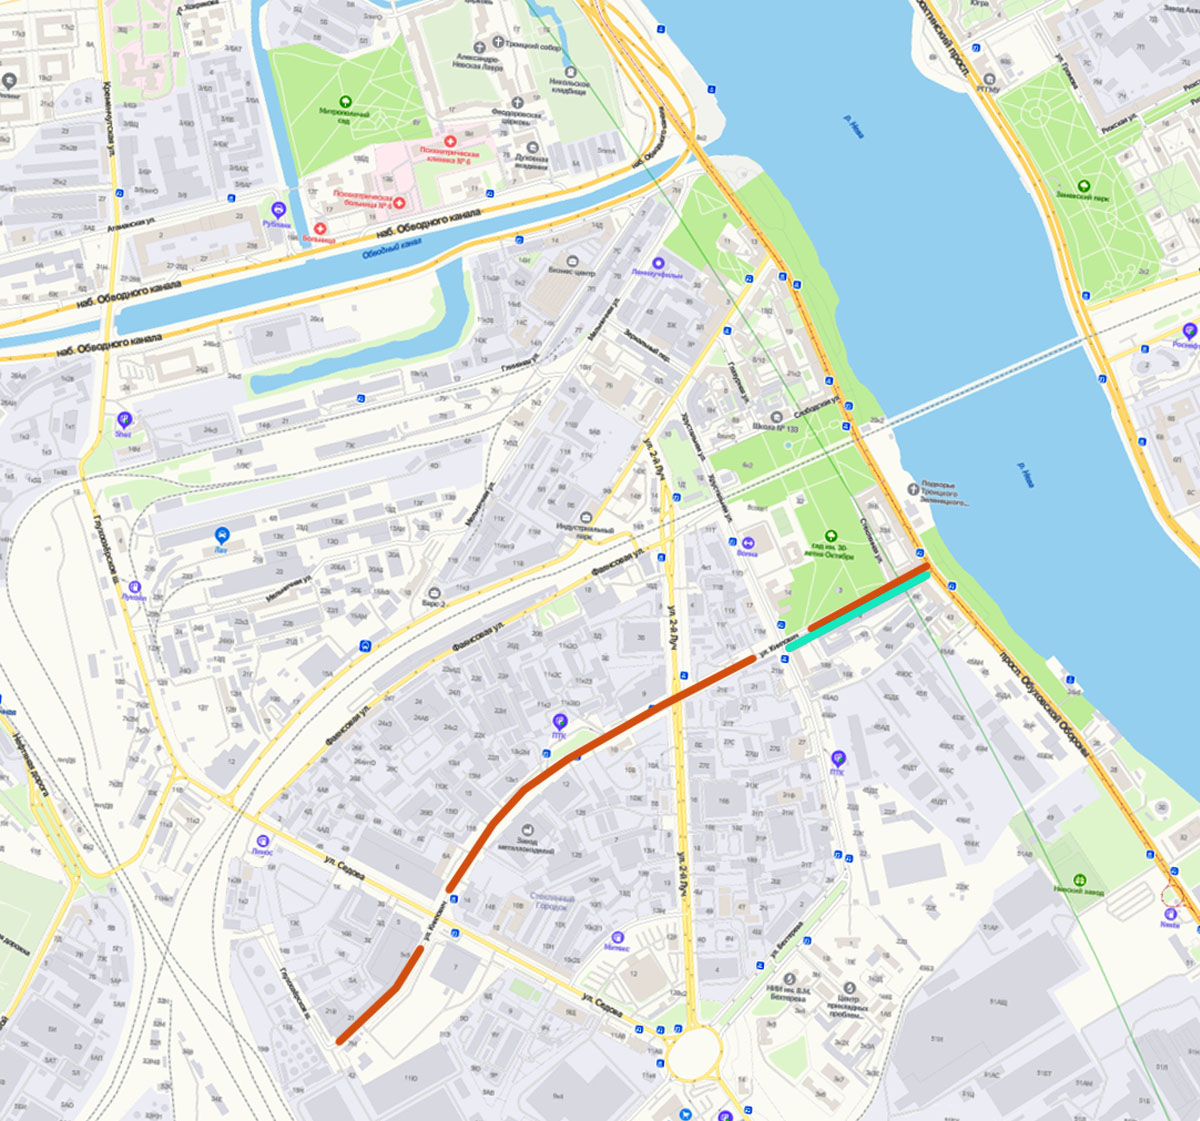 Бывшая улица Книпович на современной карте Санкт-Петербурга (yandex.ru) — красная линия. Бирюзовым цветом показан отрезок бывшей Смоляной улицы